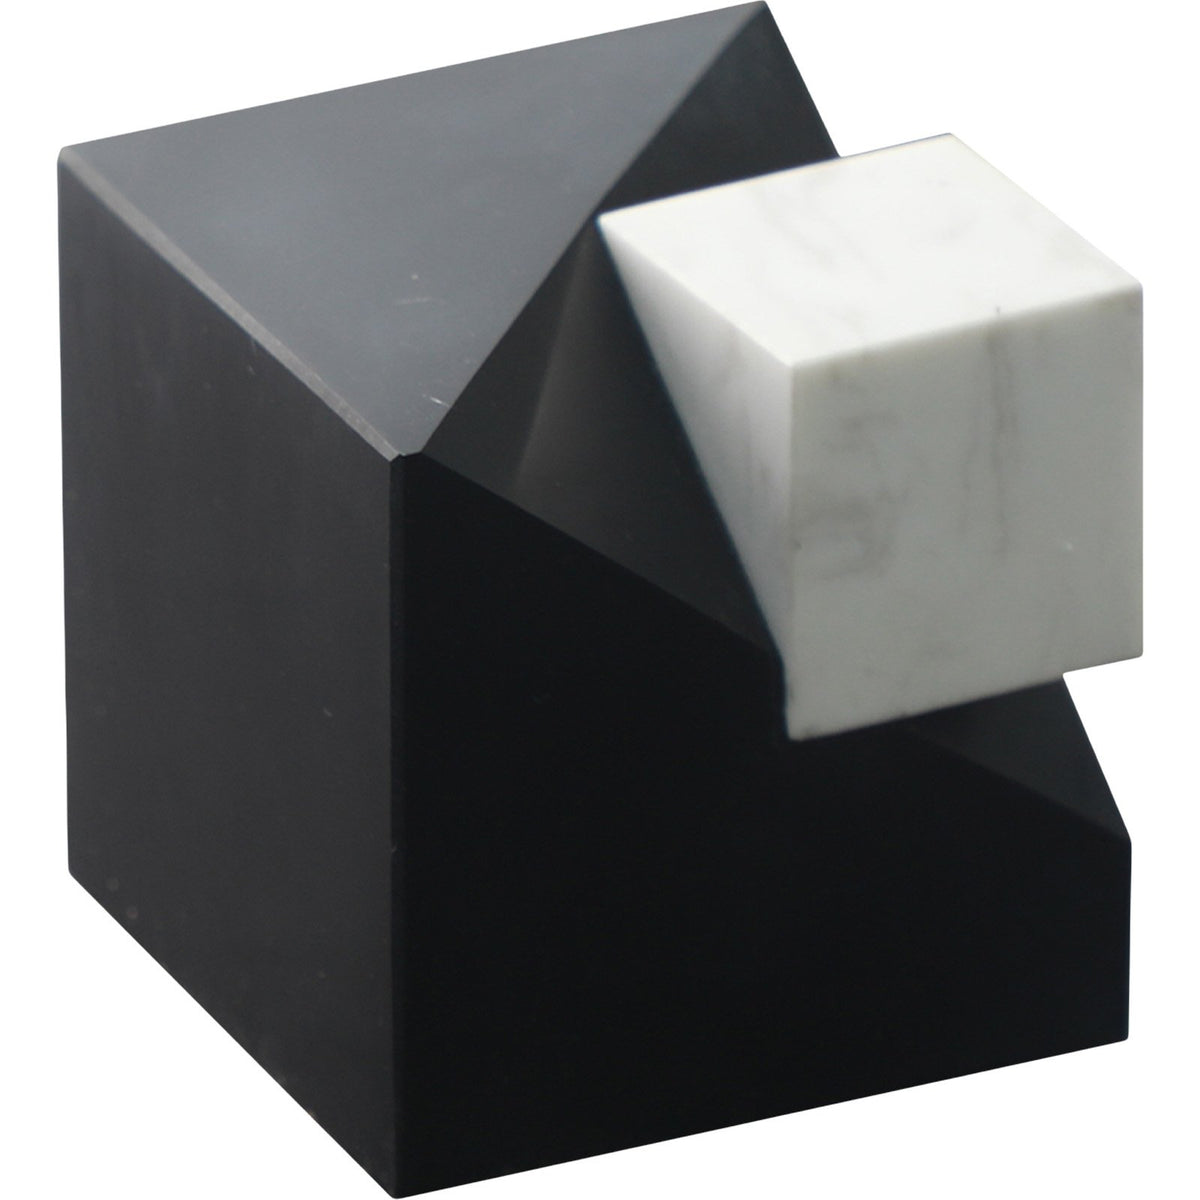 Cubic I Sculpture